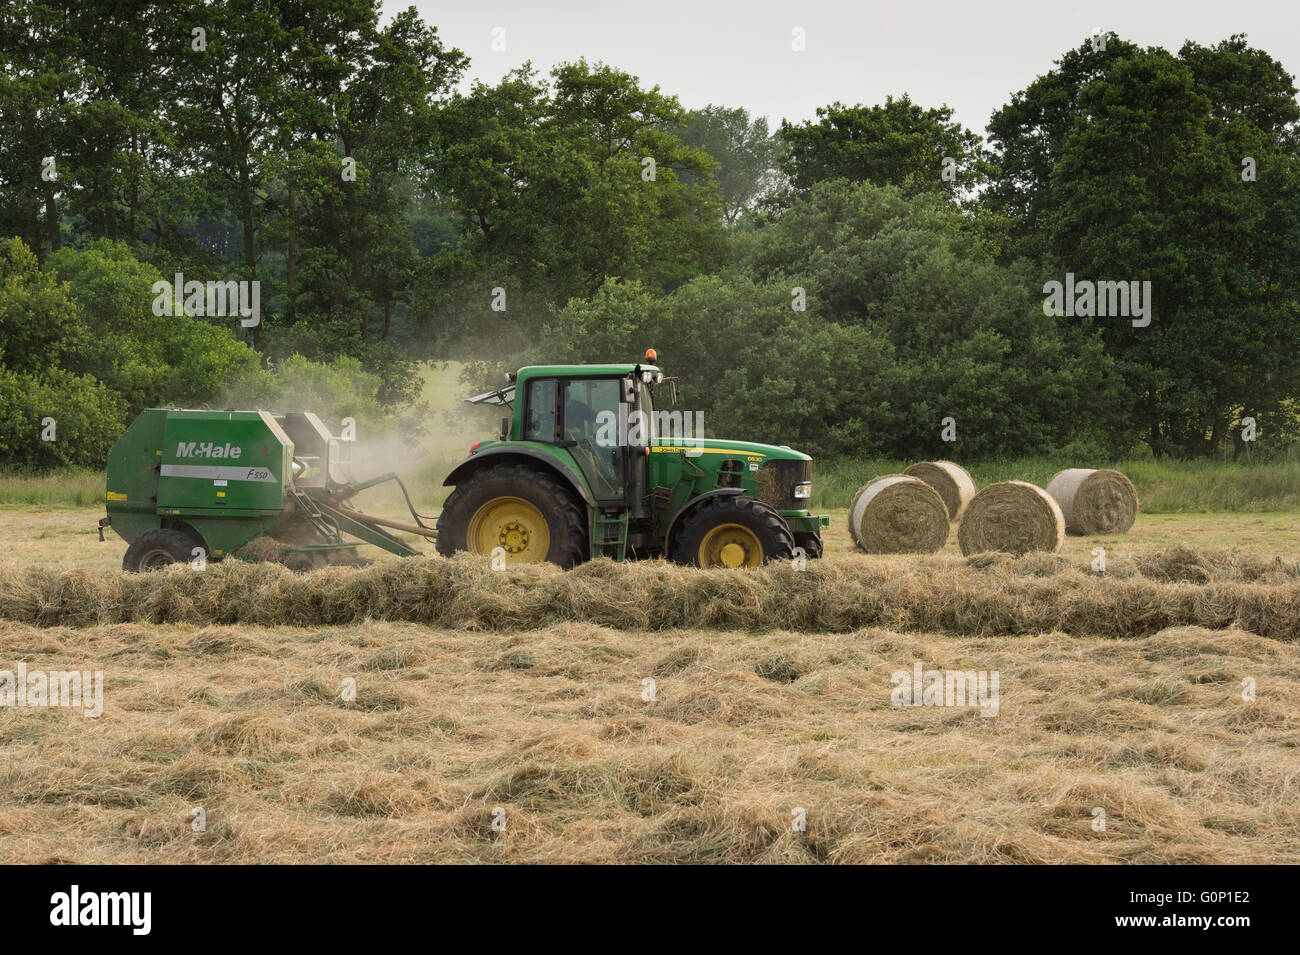 Tracteur agricole travaillant dans un champ, ensilage et tirant une ramasseuse-presse à balles rondes (4 balles au-delà) - Grande Ouseburn, North Yorkshire, GB. Banque D'Images